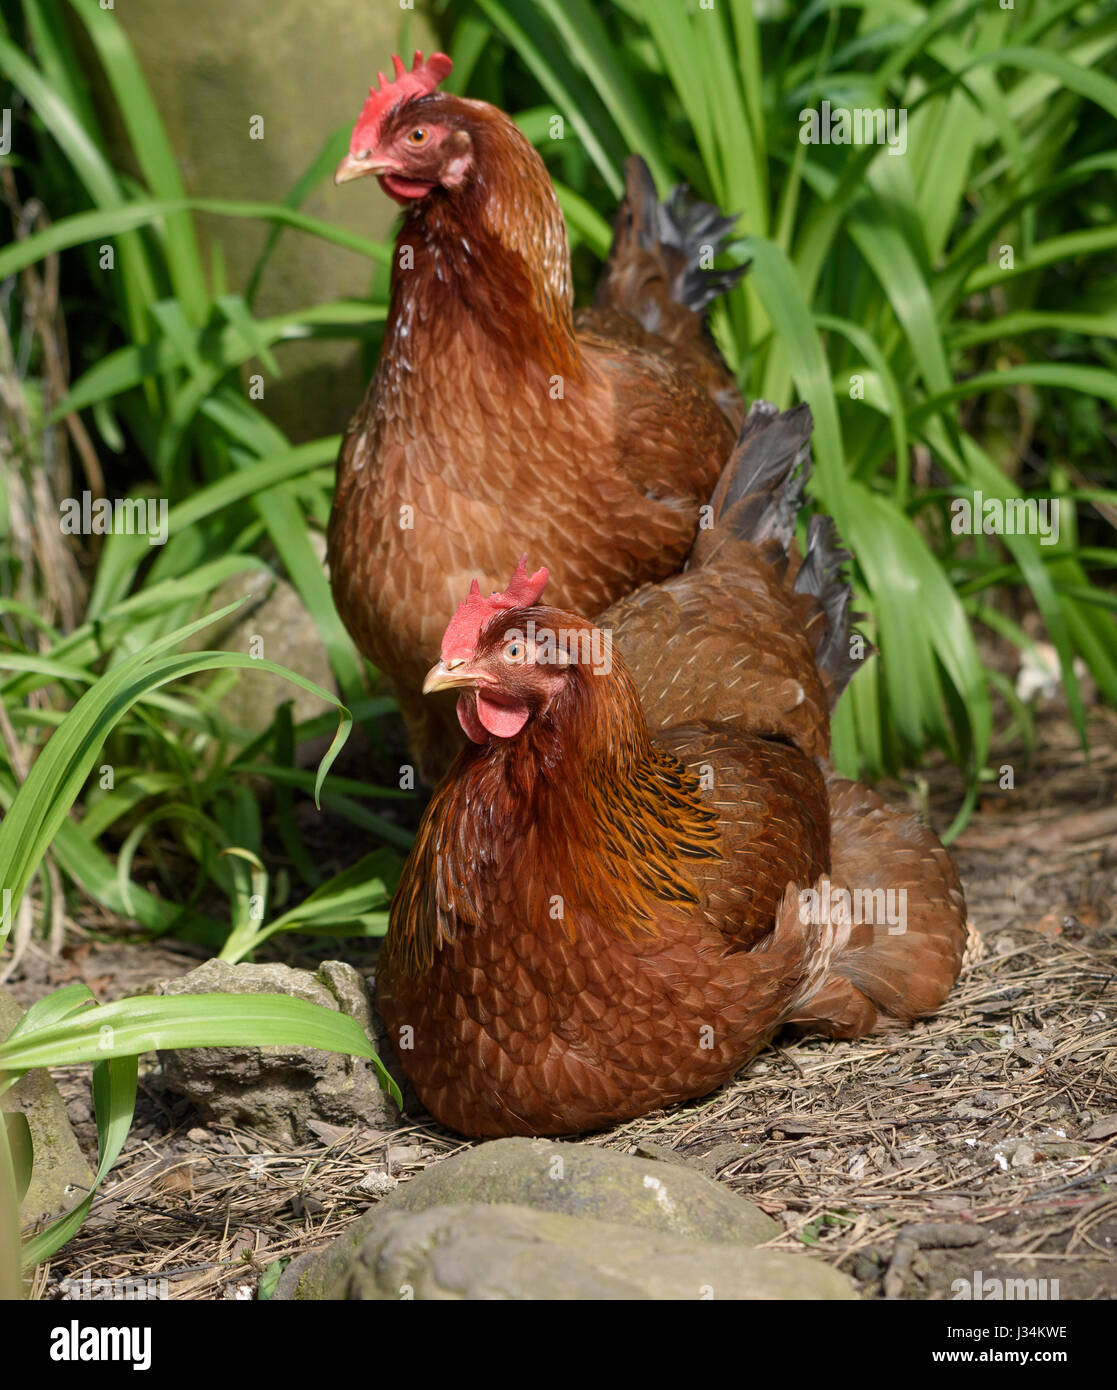 Close up of a Welsummer Welsumer ou poulet, une race de poule domestique néerlandais, dans un jardin, à l'effritement, Lancashire. Banque D'Images